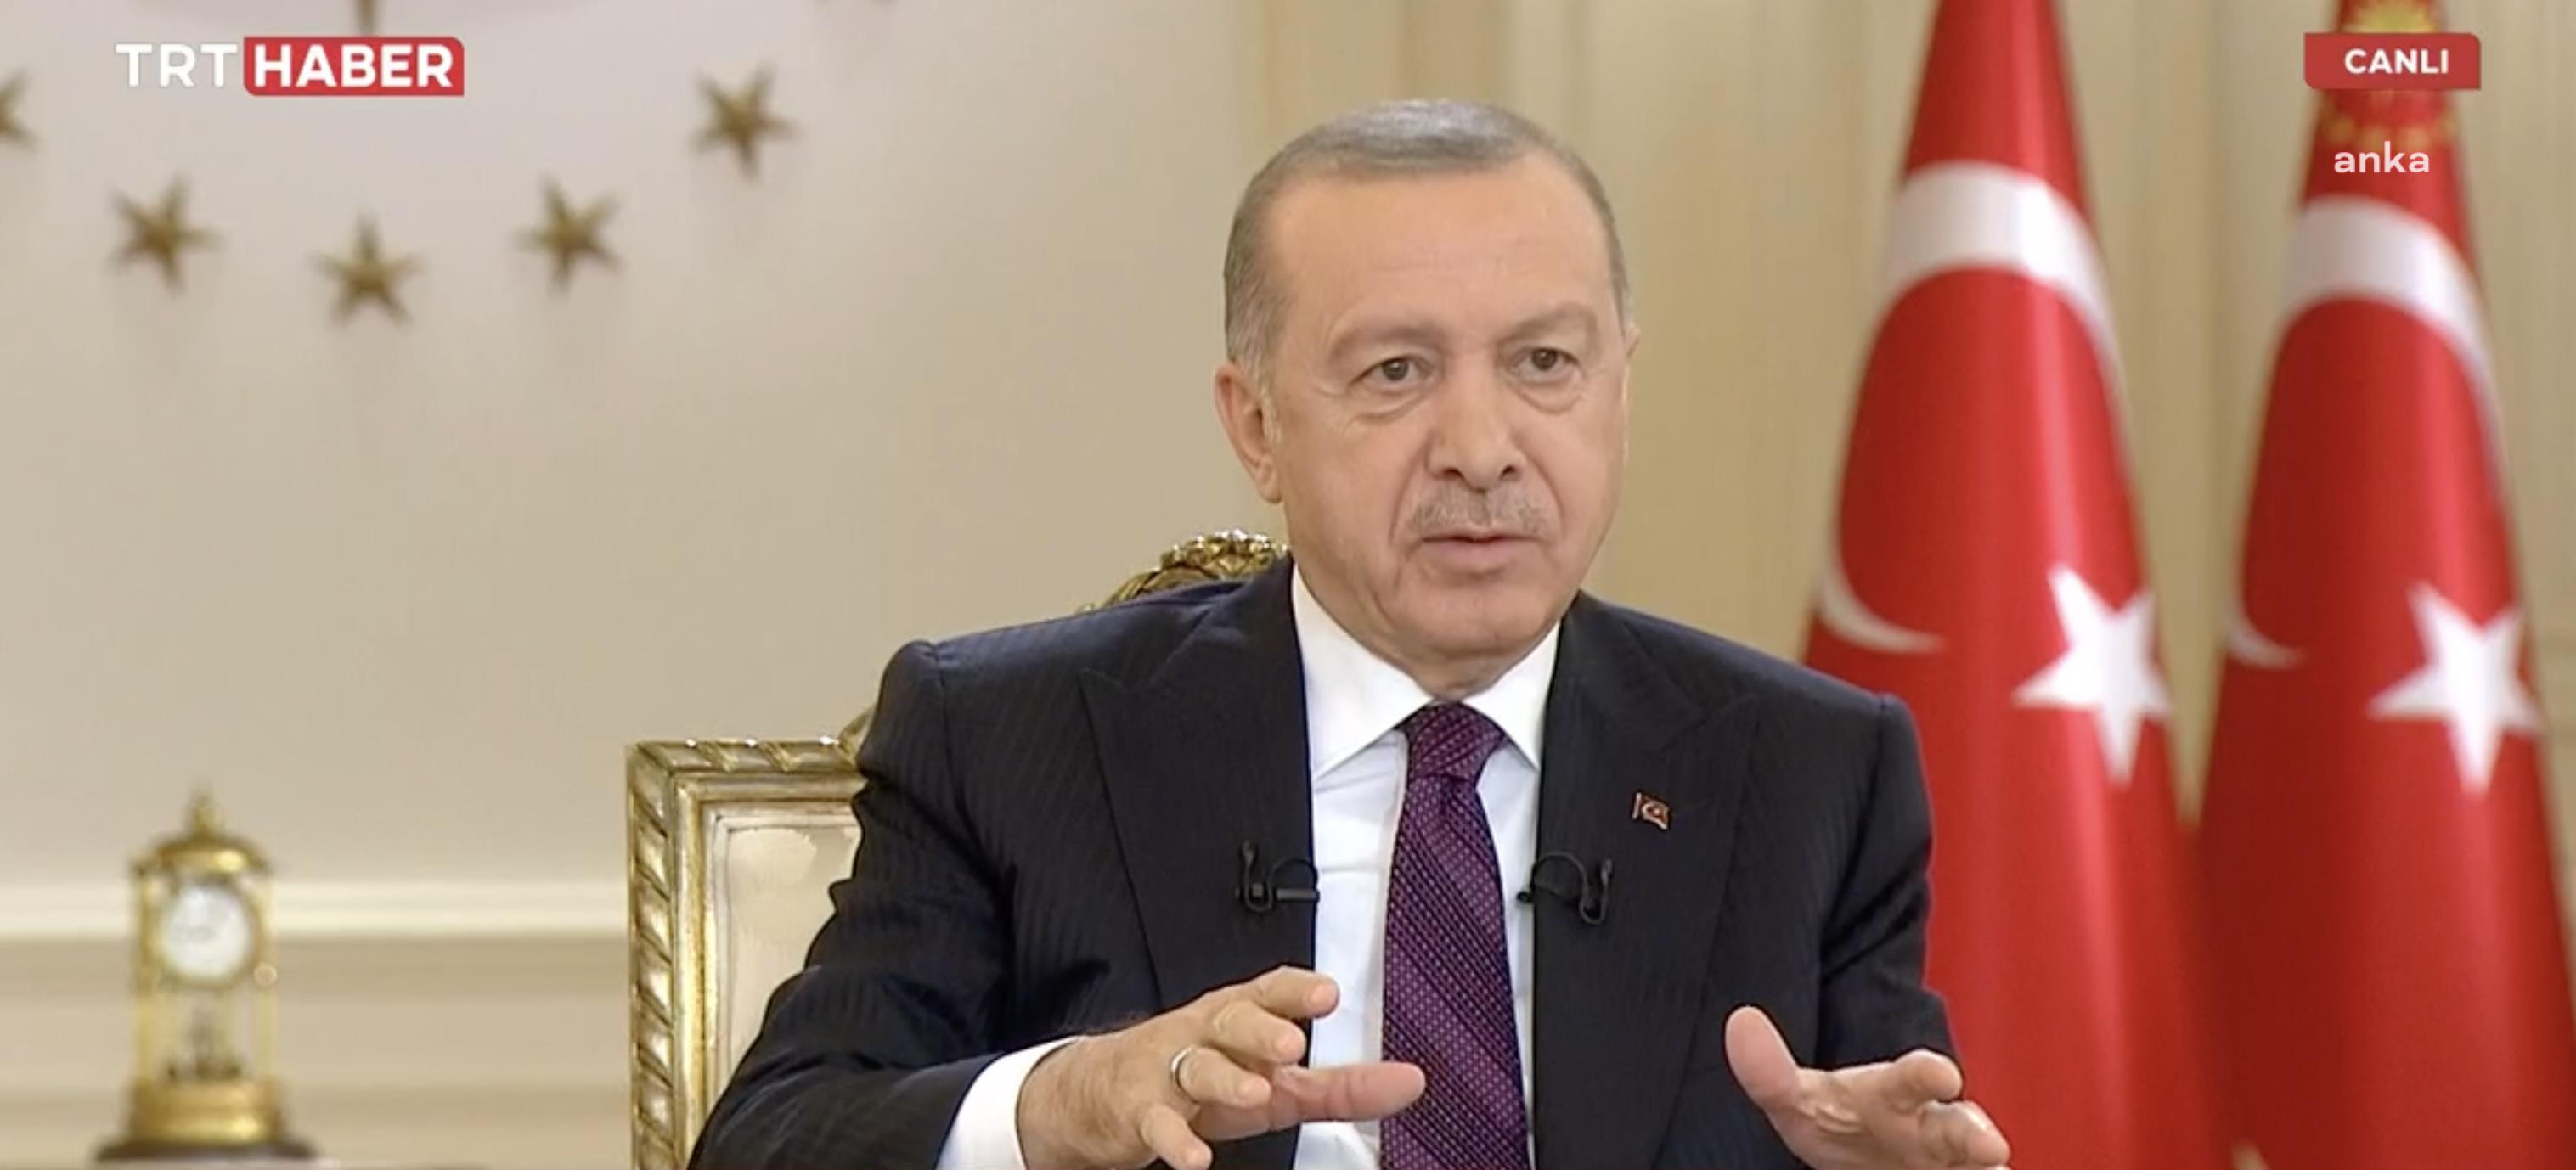 Cumhurbaşkanı Erdoğan: "Parlamenter demokrasi mazi oldu"